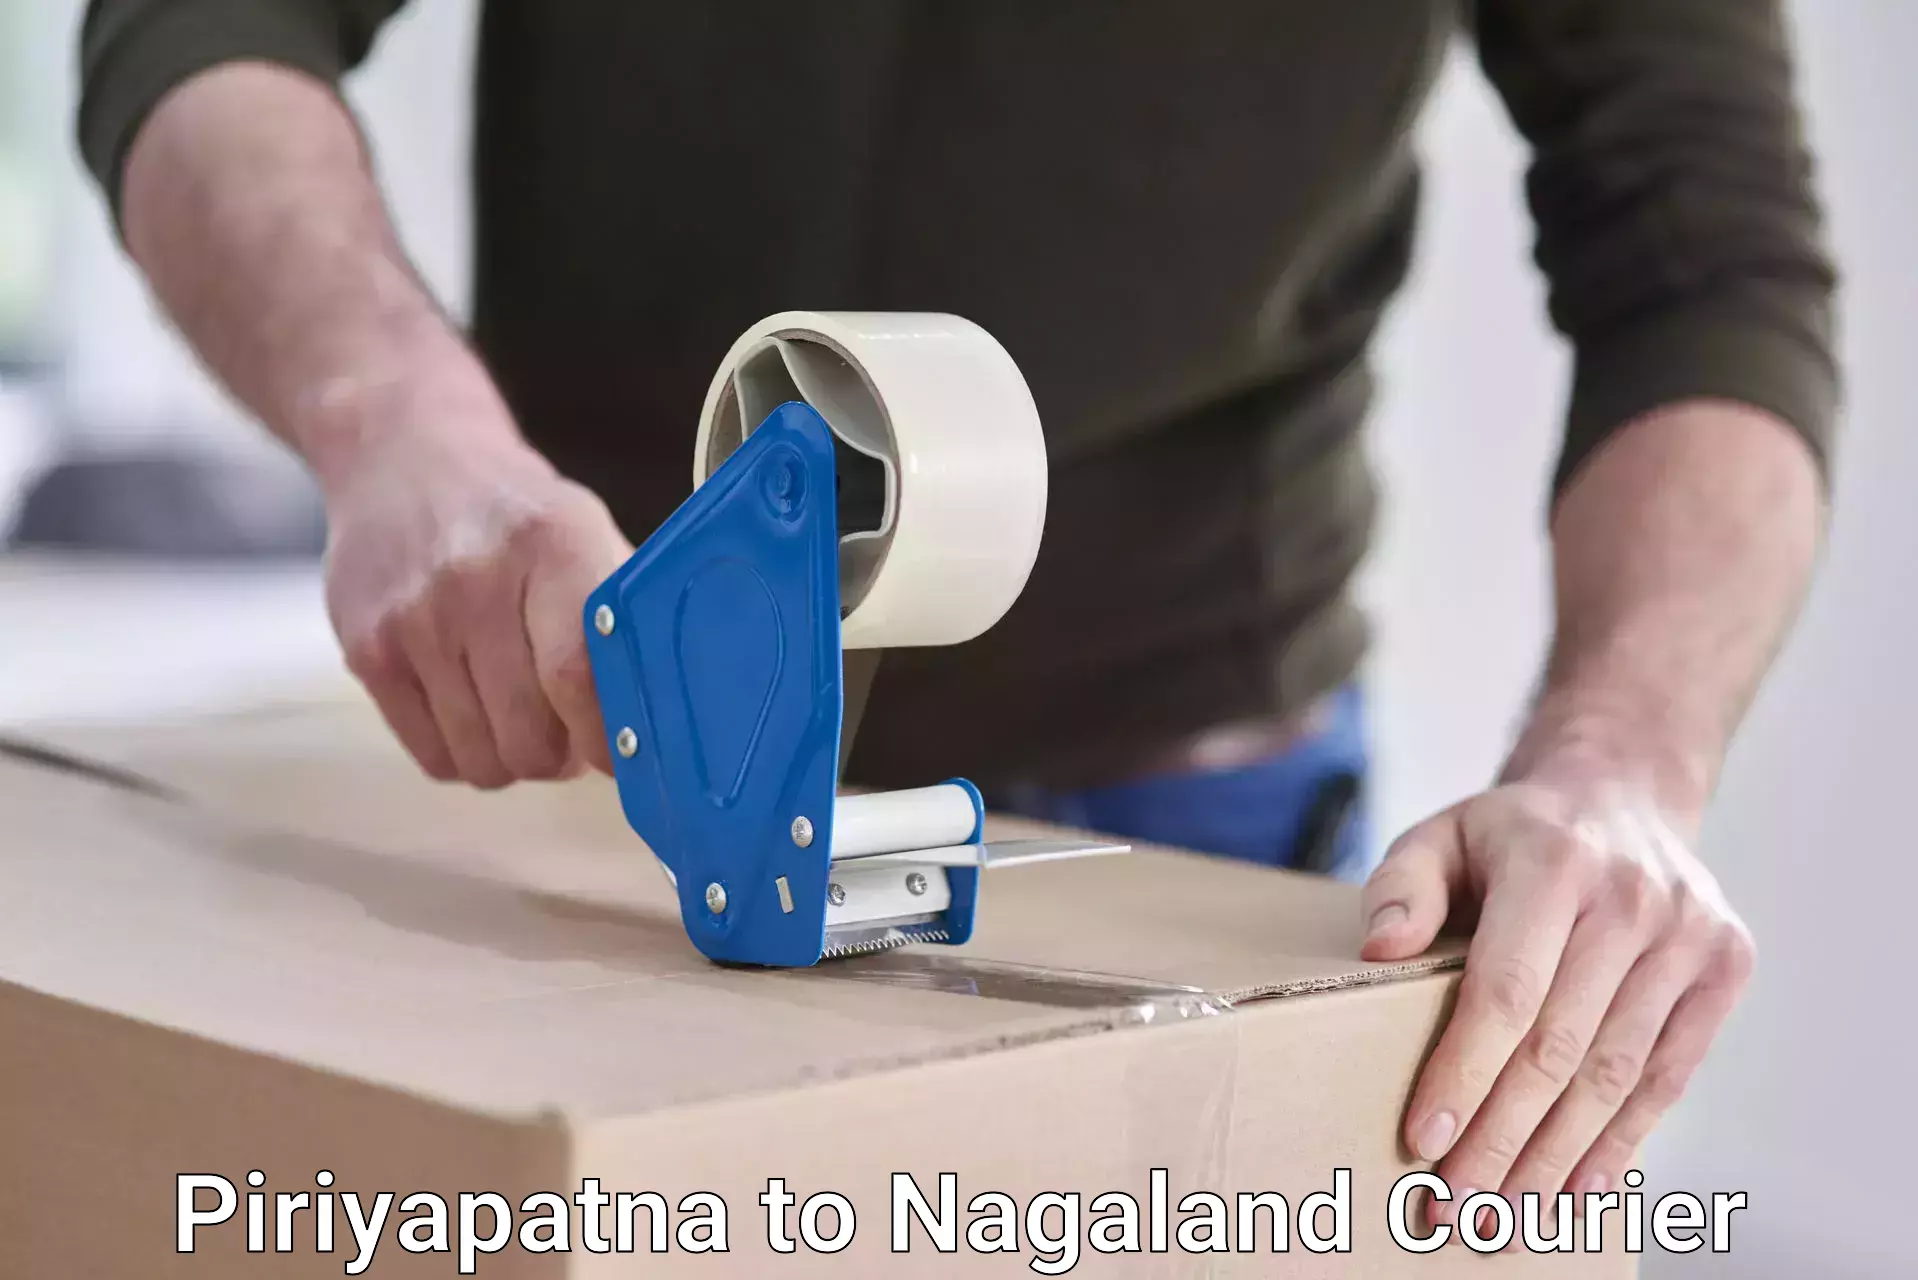 Cost-effective shipping solutions Piriyapatna to Nagaland